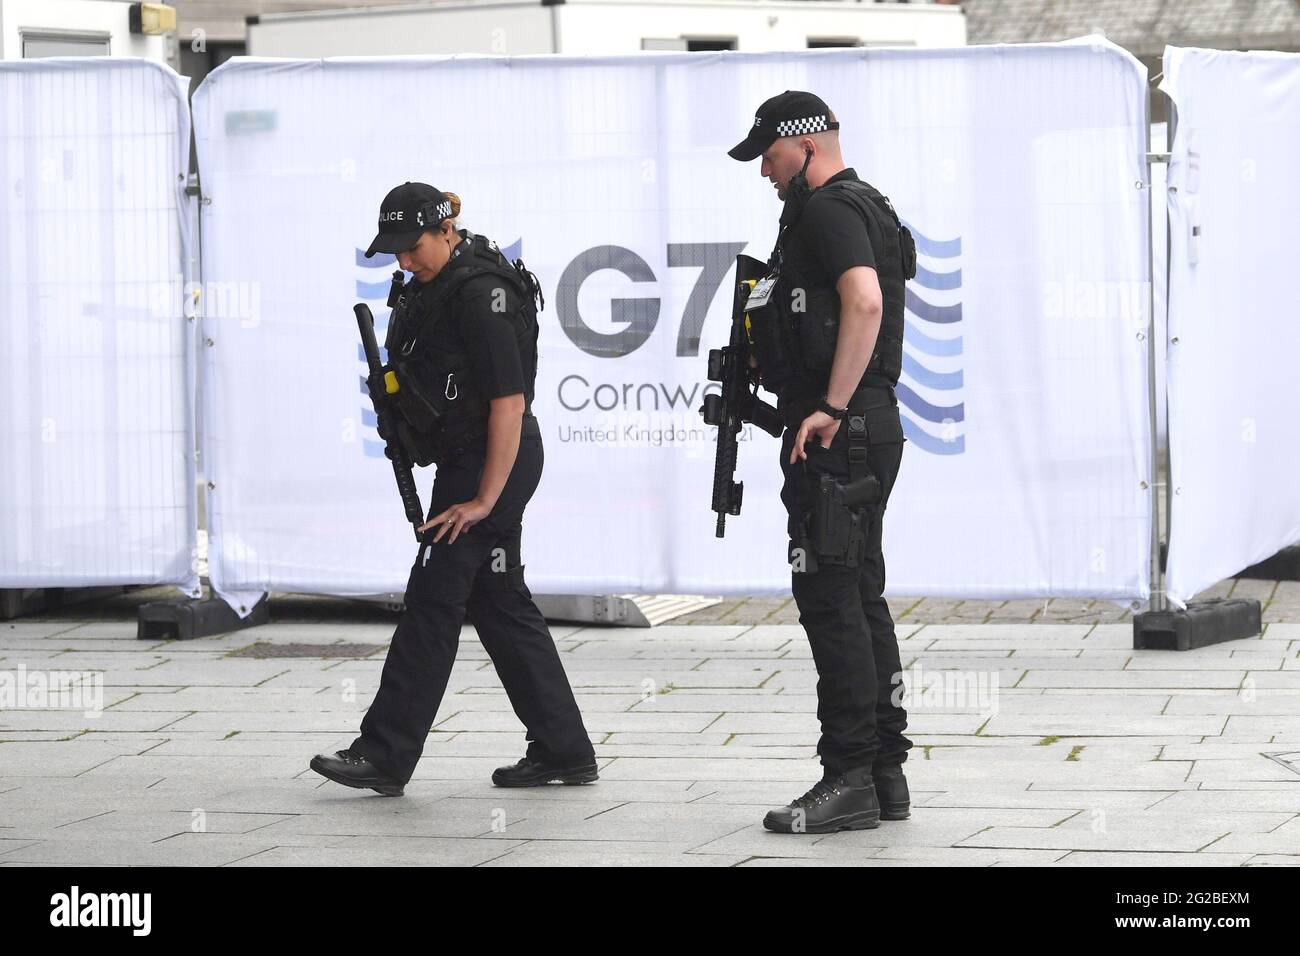 Polizei im Medienzentrum in Falmouth, vor dem G7-Gipfel in Cornwall. Bilddatum: Donnerstag, 10. Juni 2021. Stockfoto